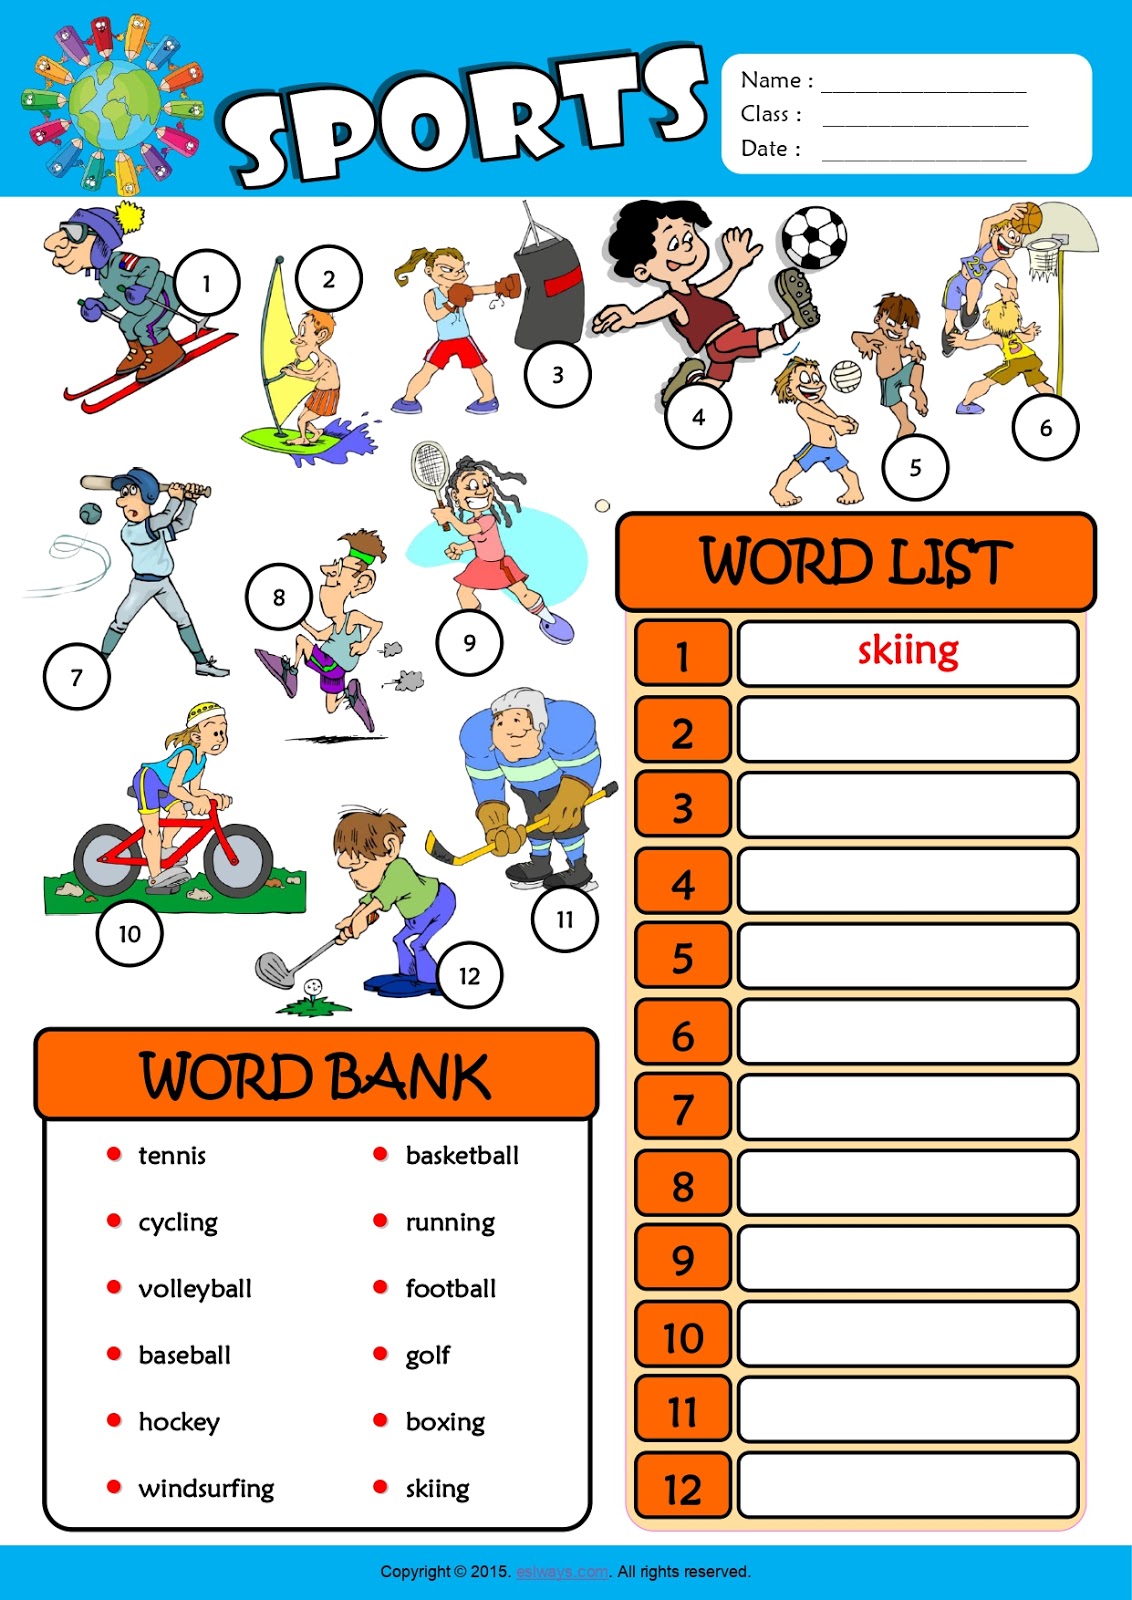 Спорт урок английского языка. Спорт Worksheets. Спорт Worksheet for Kids. Спортивные игры Worksheets. Sports for Kids задания.